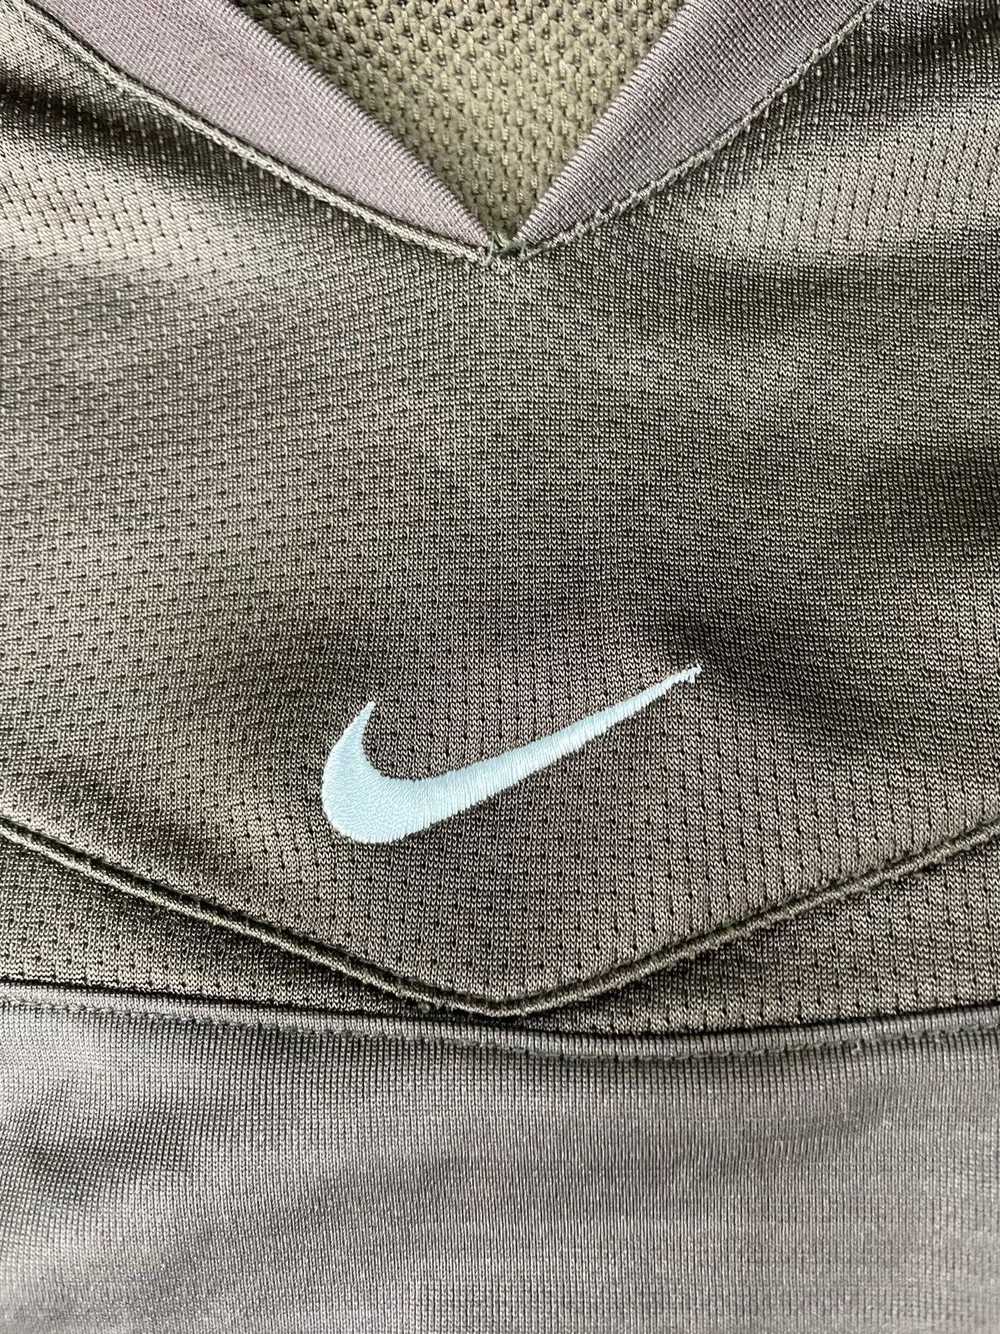 Kobe Mentality × Nike Kobe Brown Nike Sleeves Siz… - image 2